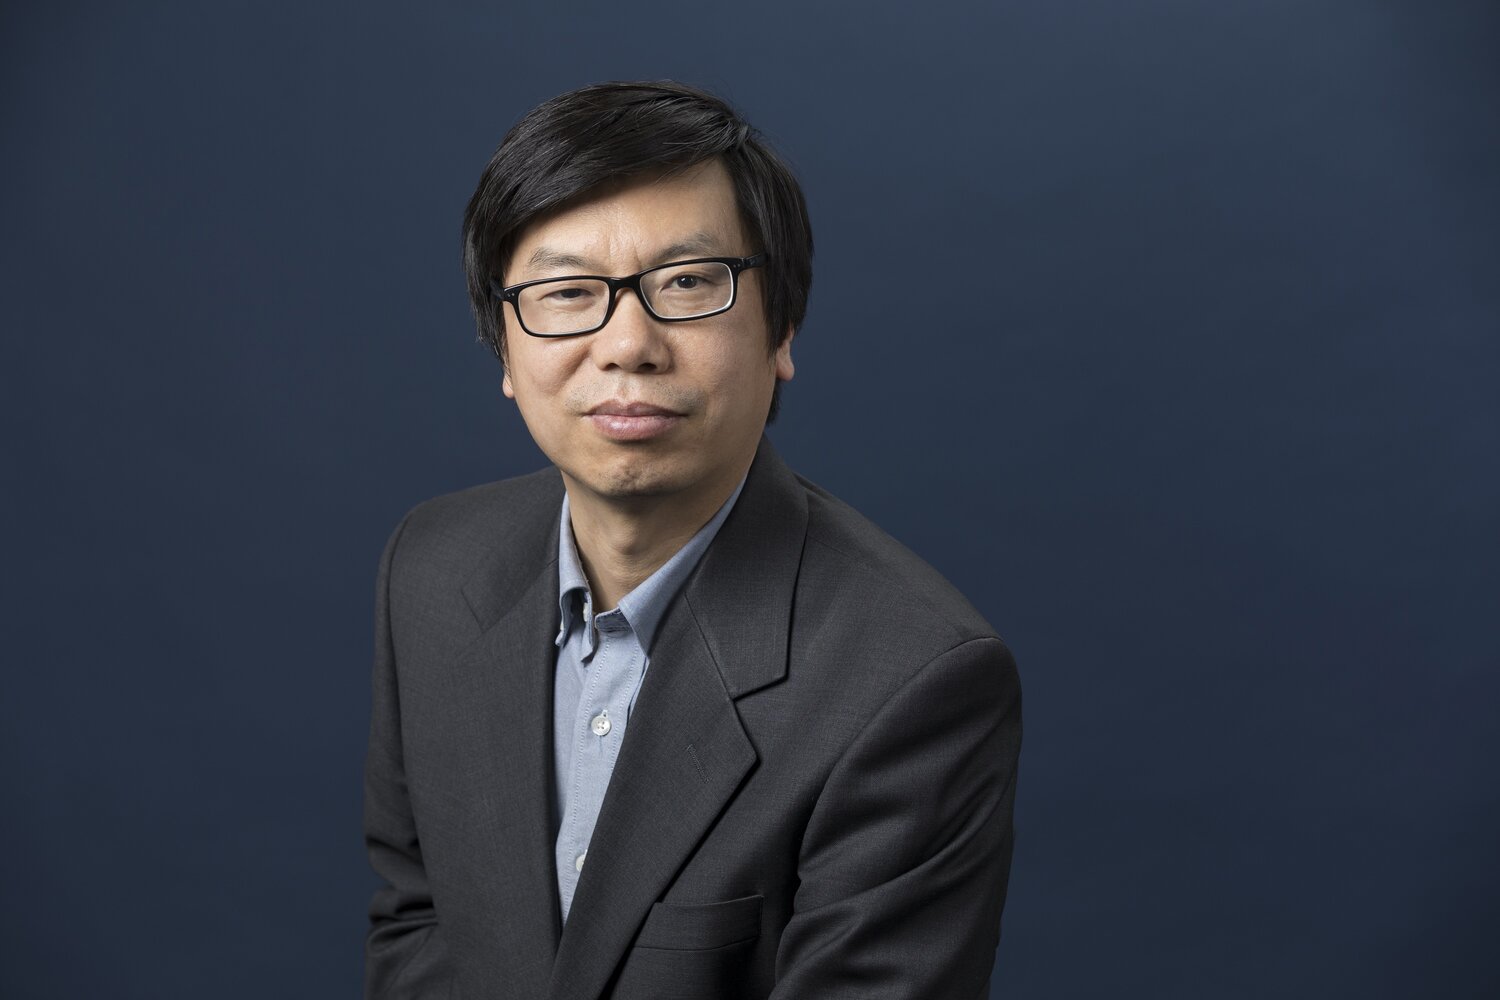 徐波教授: 中国科学院香港创新研究院人工智能与机器人研究中心主任、中国科学院自动化研究所所长。